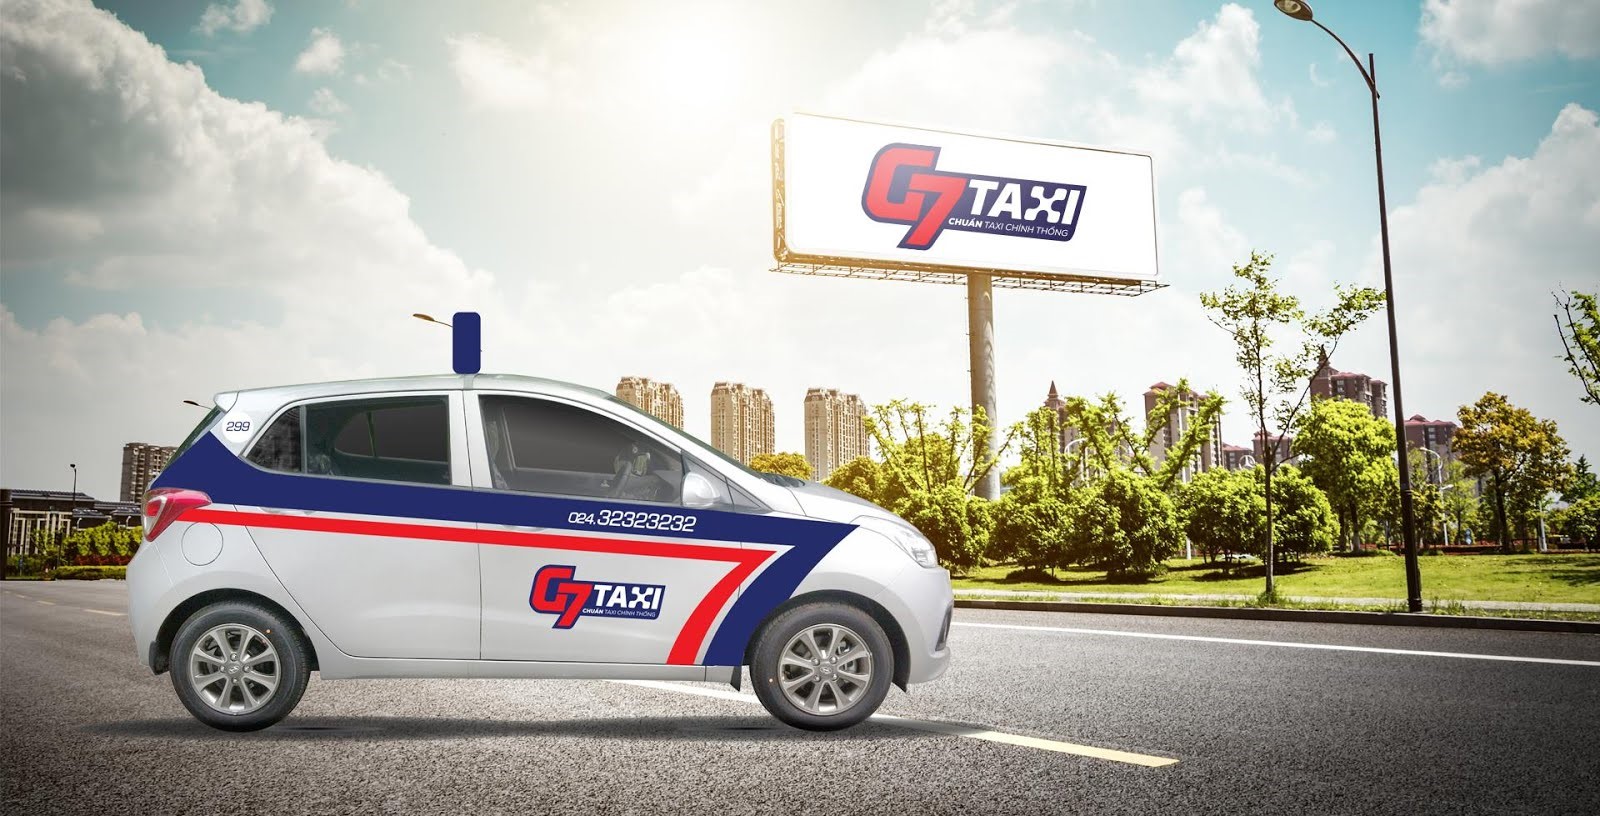 Thương quyền Taxi G7 chất lượng cao